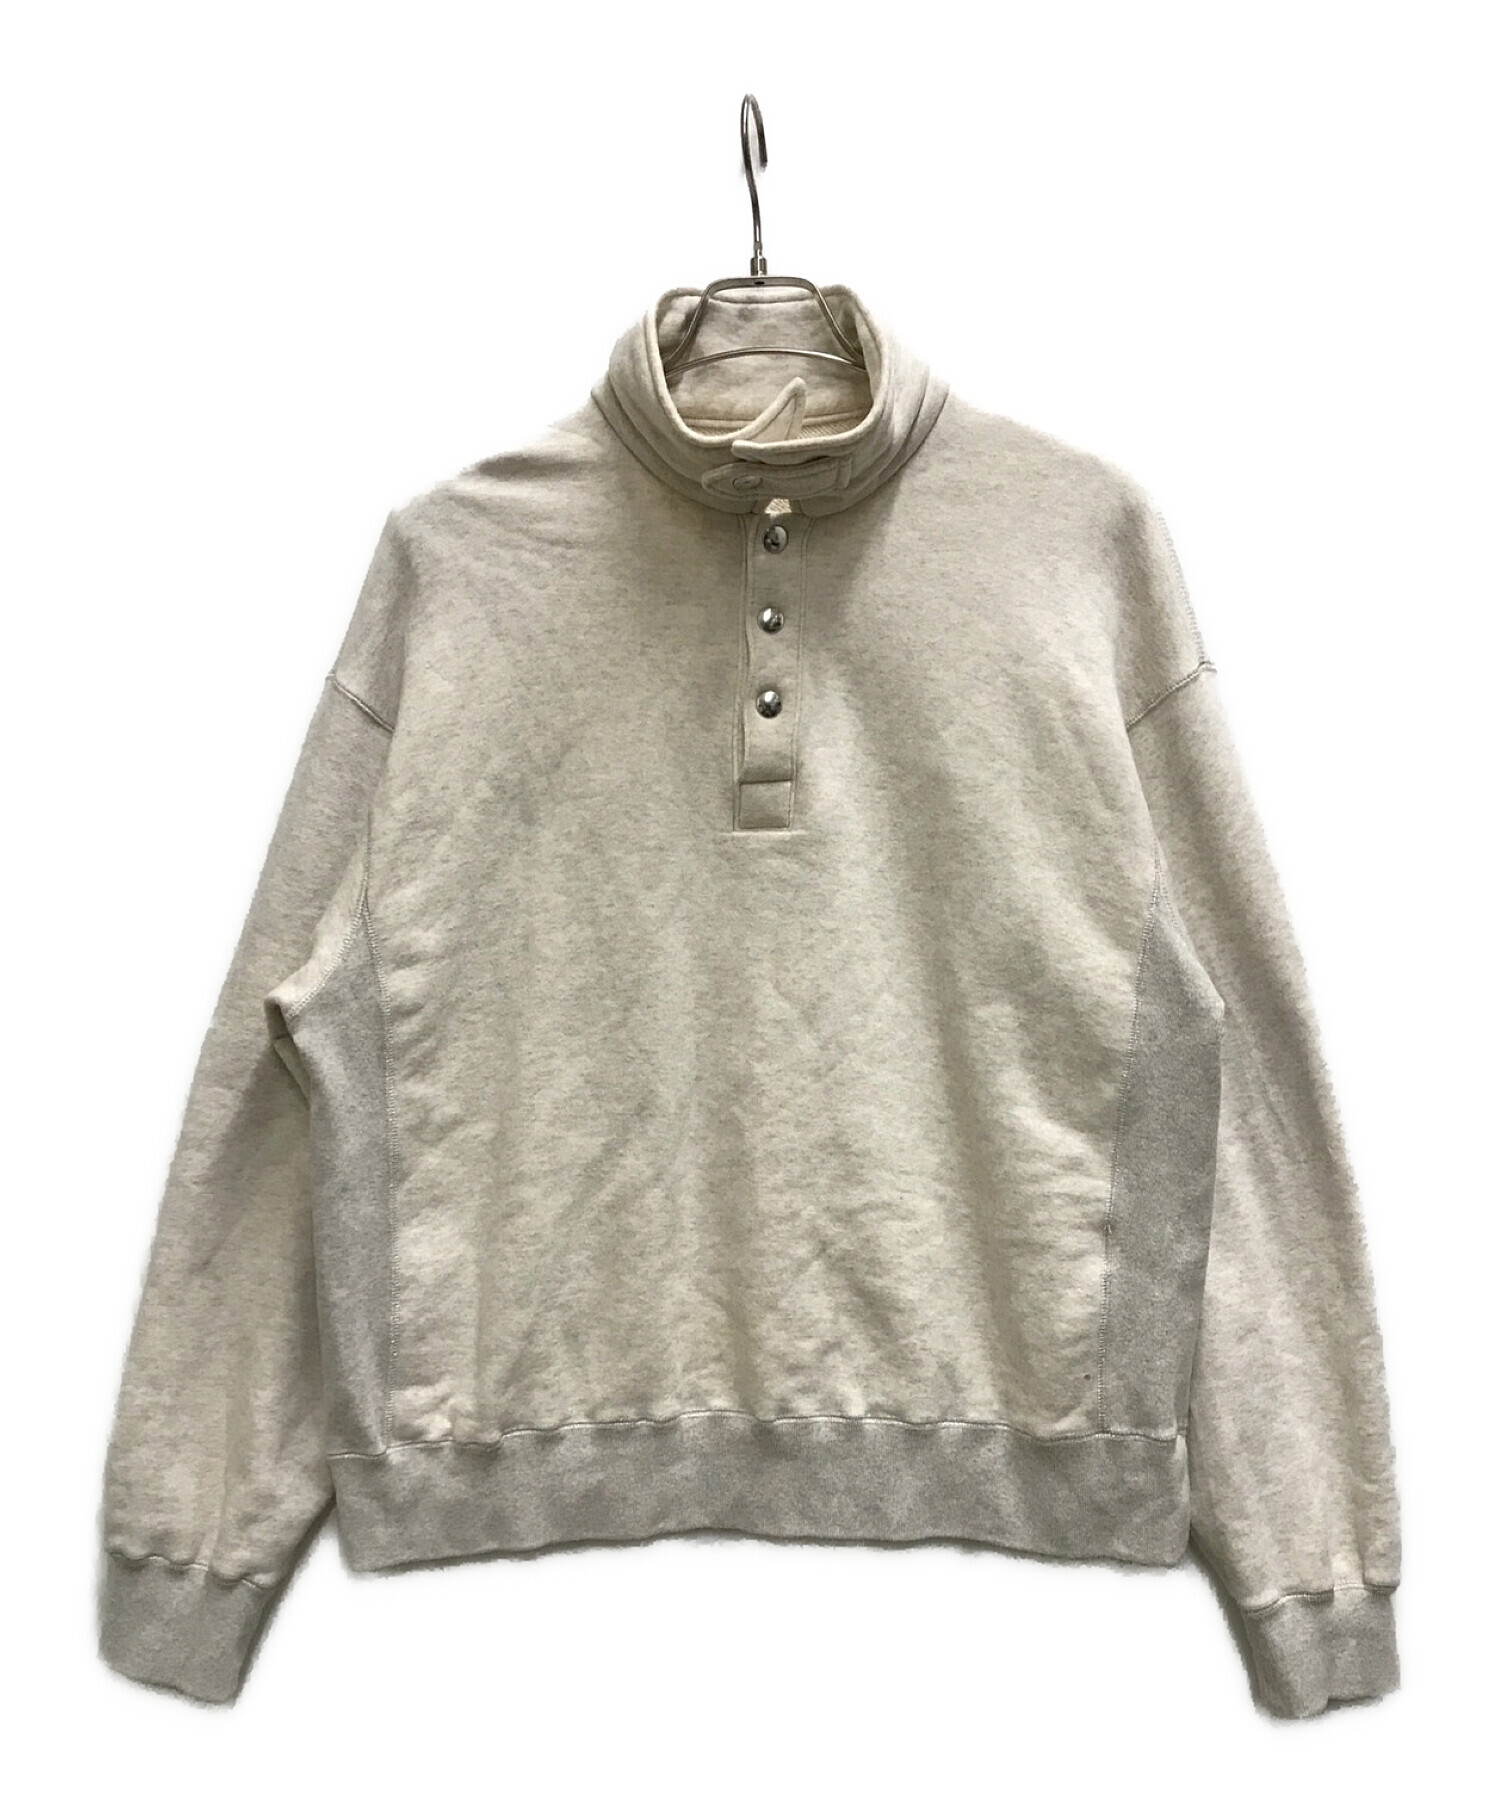 11,960円OLD FOLK HOUSE Silver Stitch Sweatshirt